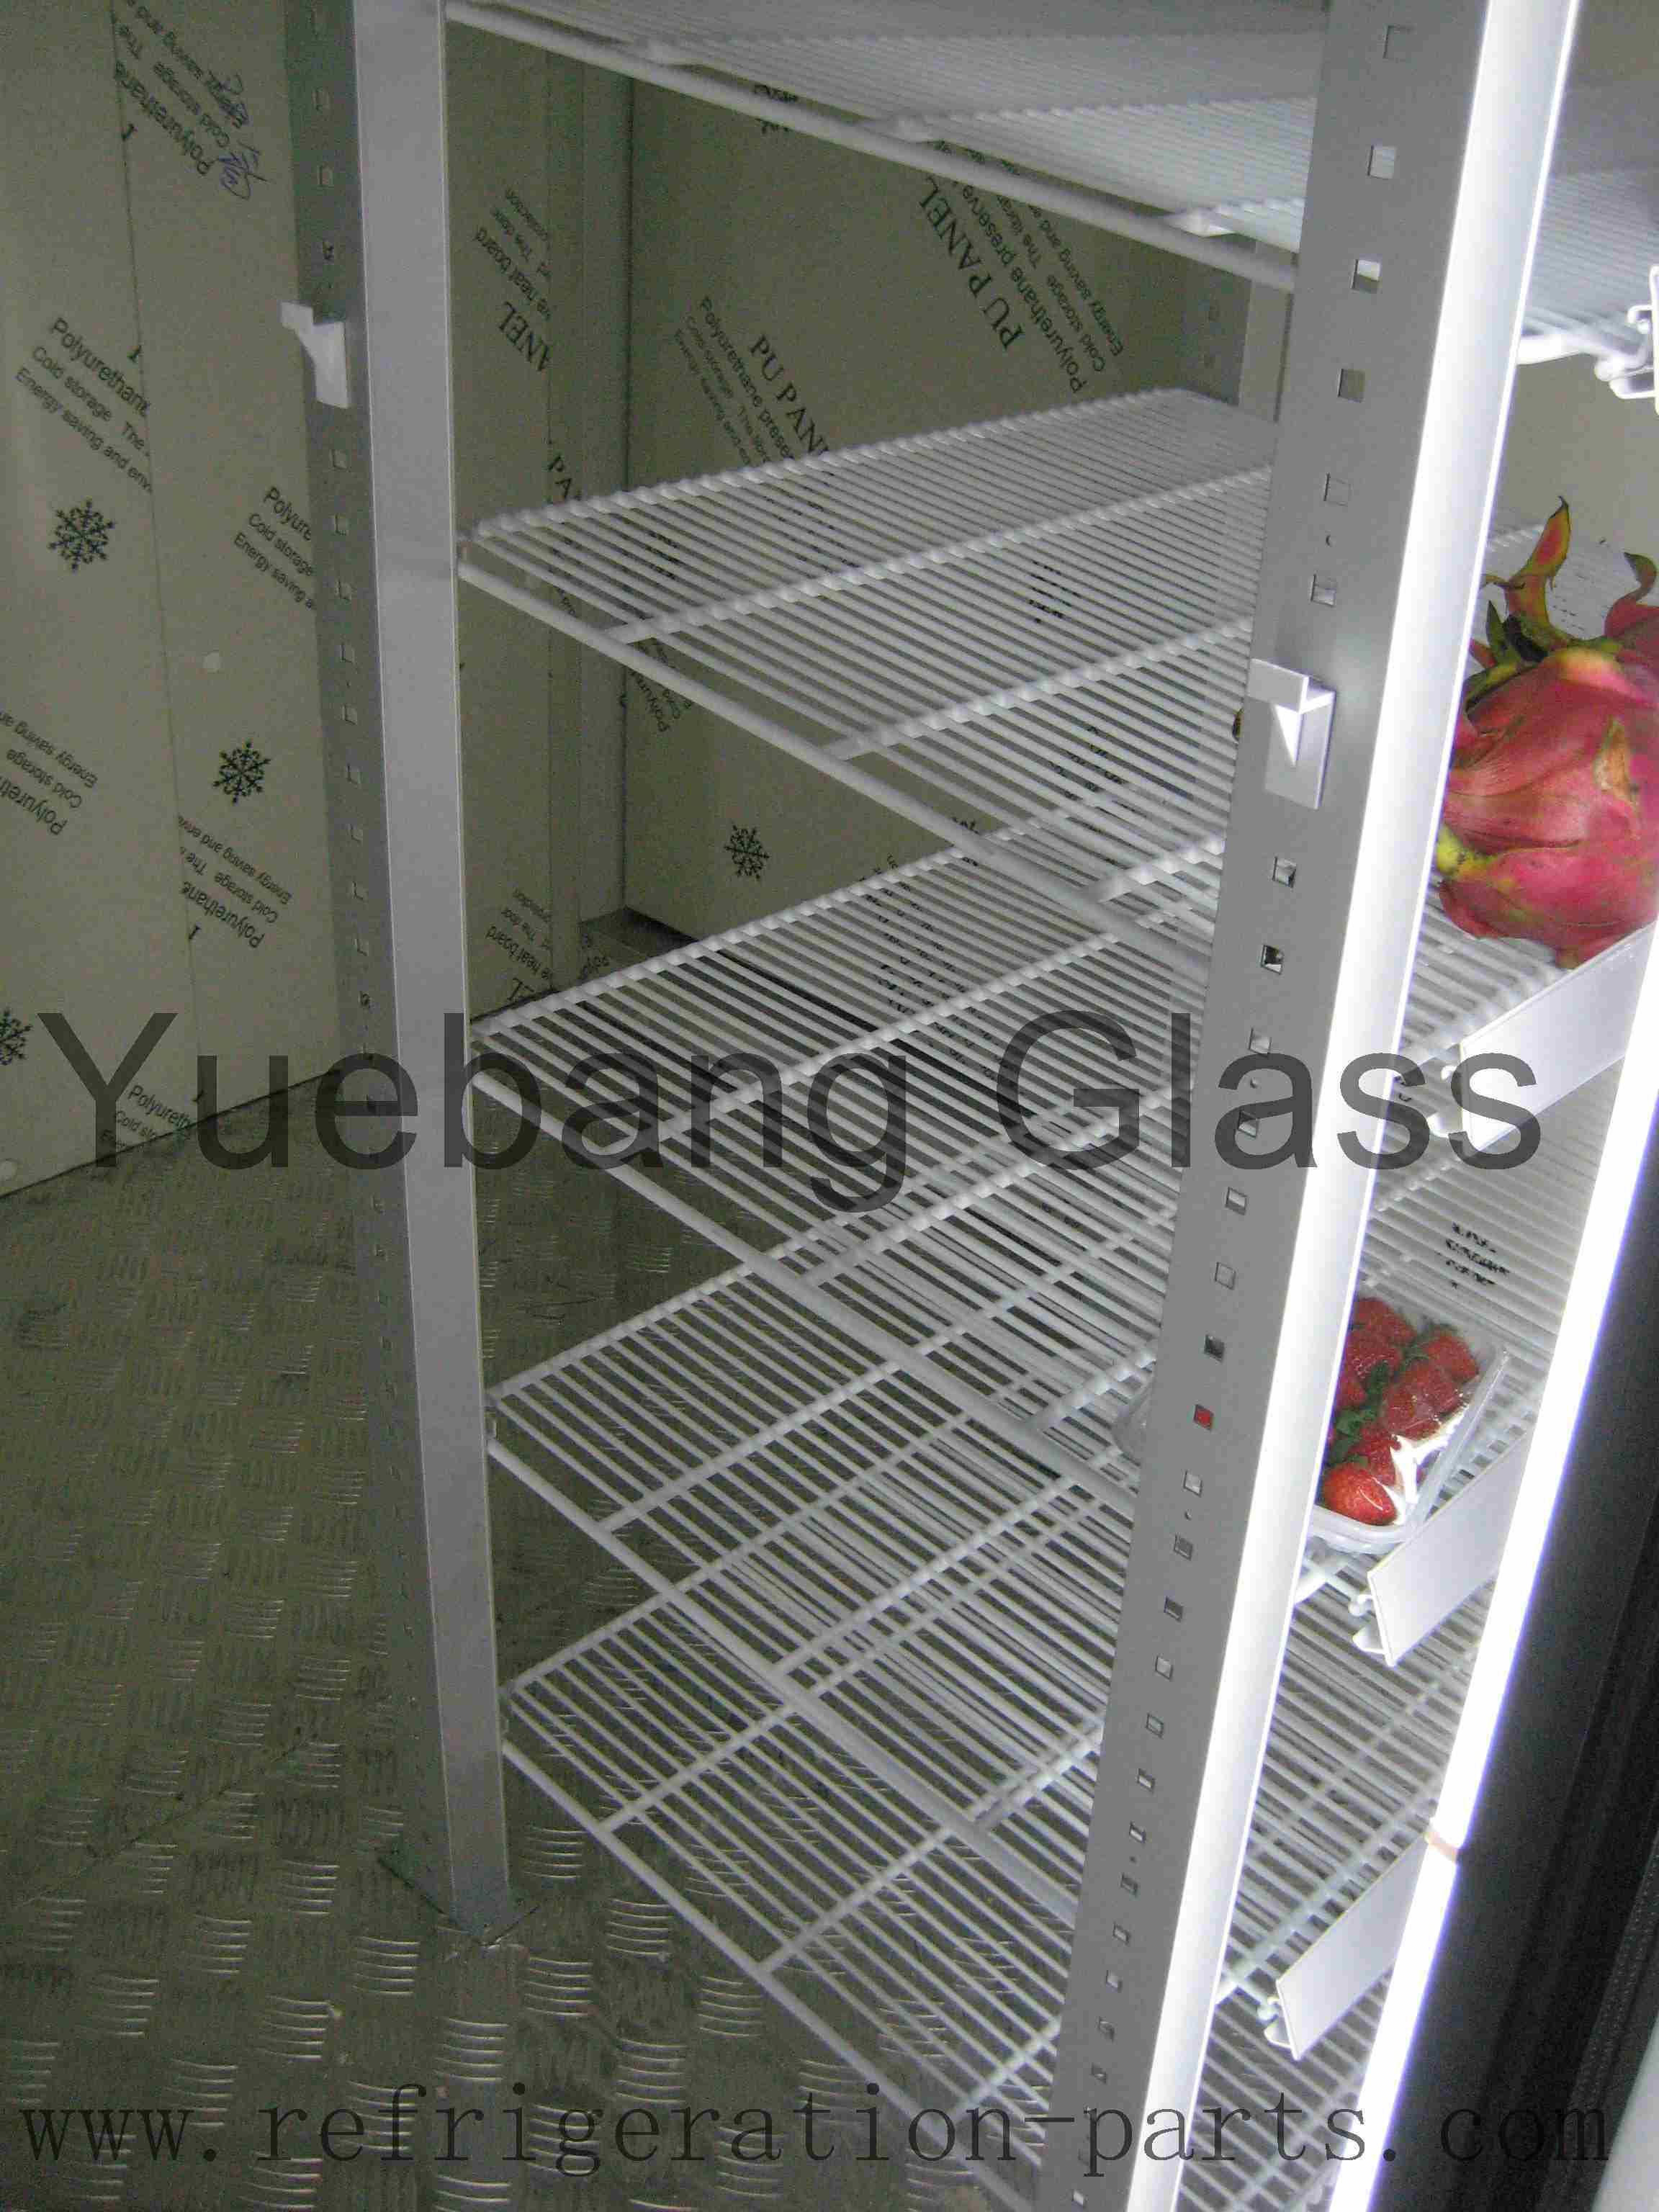 Freezer Shelf, Refrigerator Shelf, Fridge Shelves